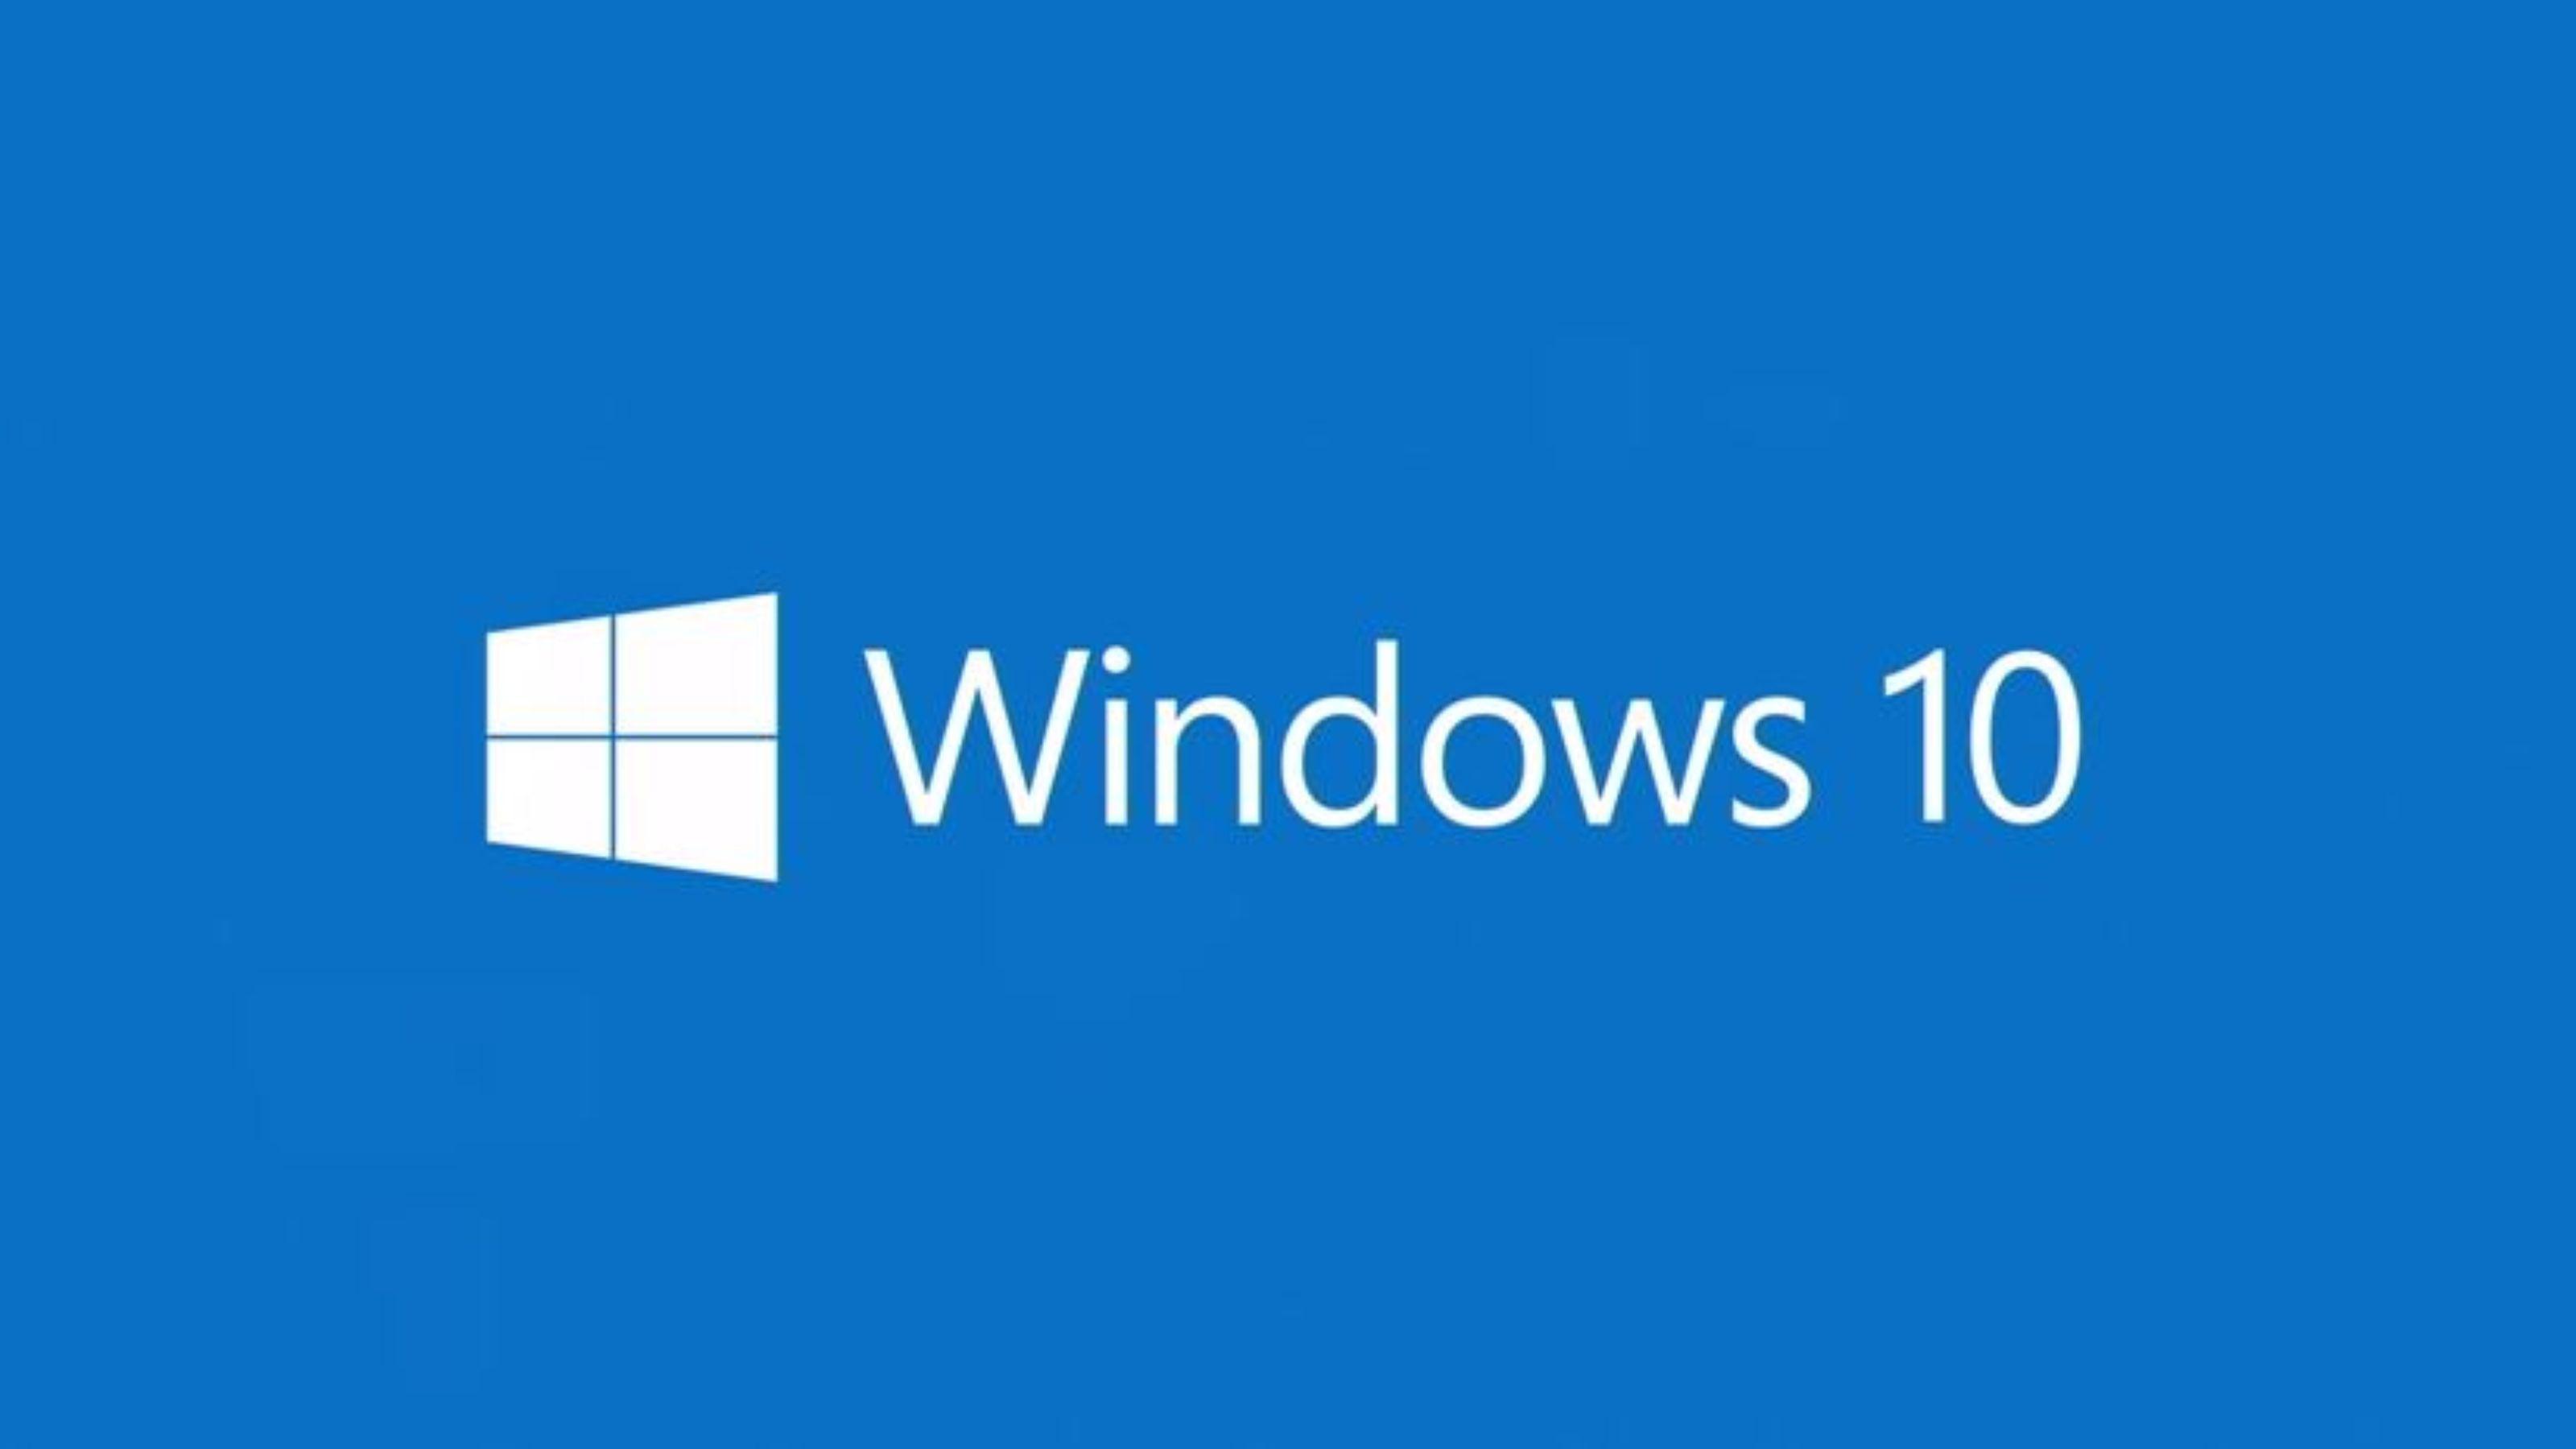 Usuários reportam que o upgrade para o Windows 10 está se instalando sozinho